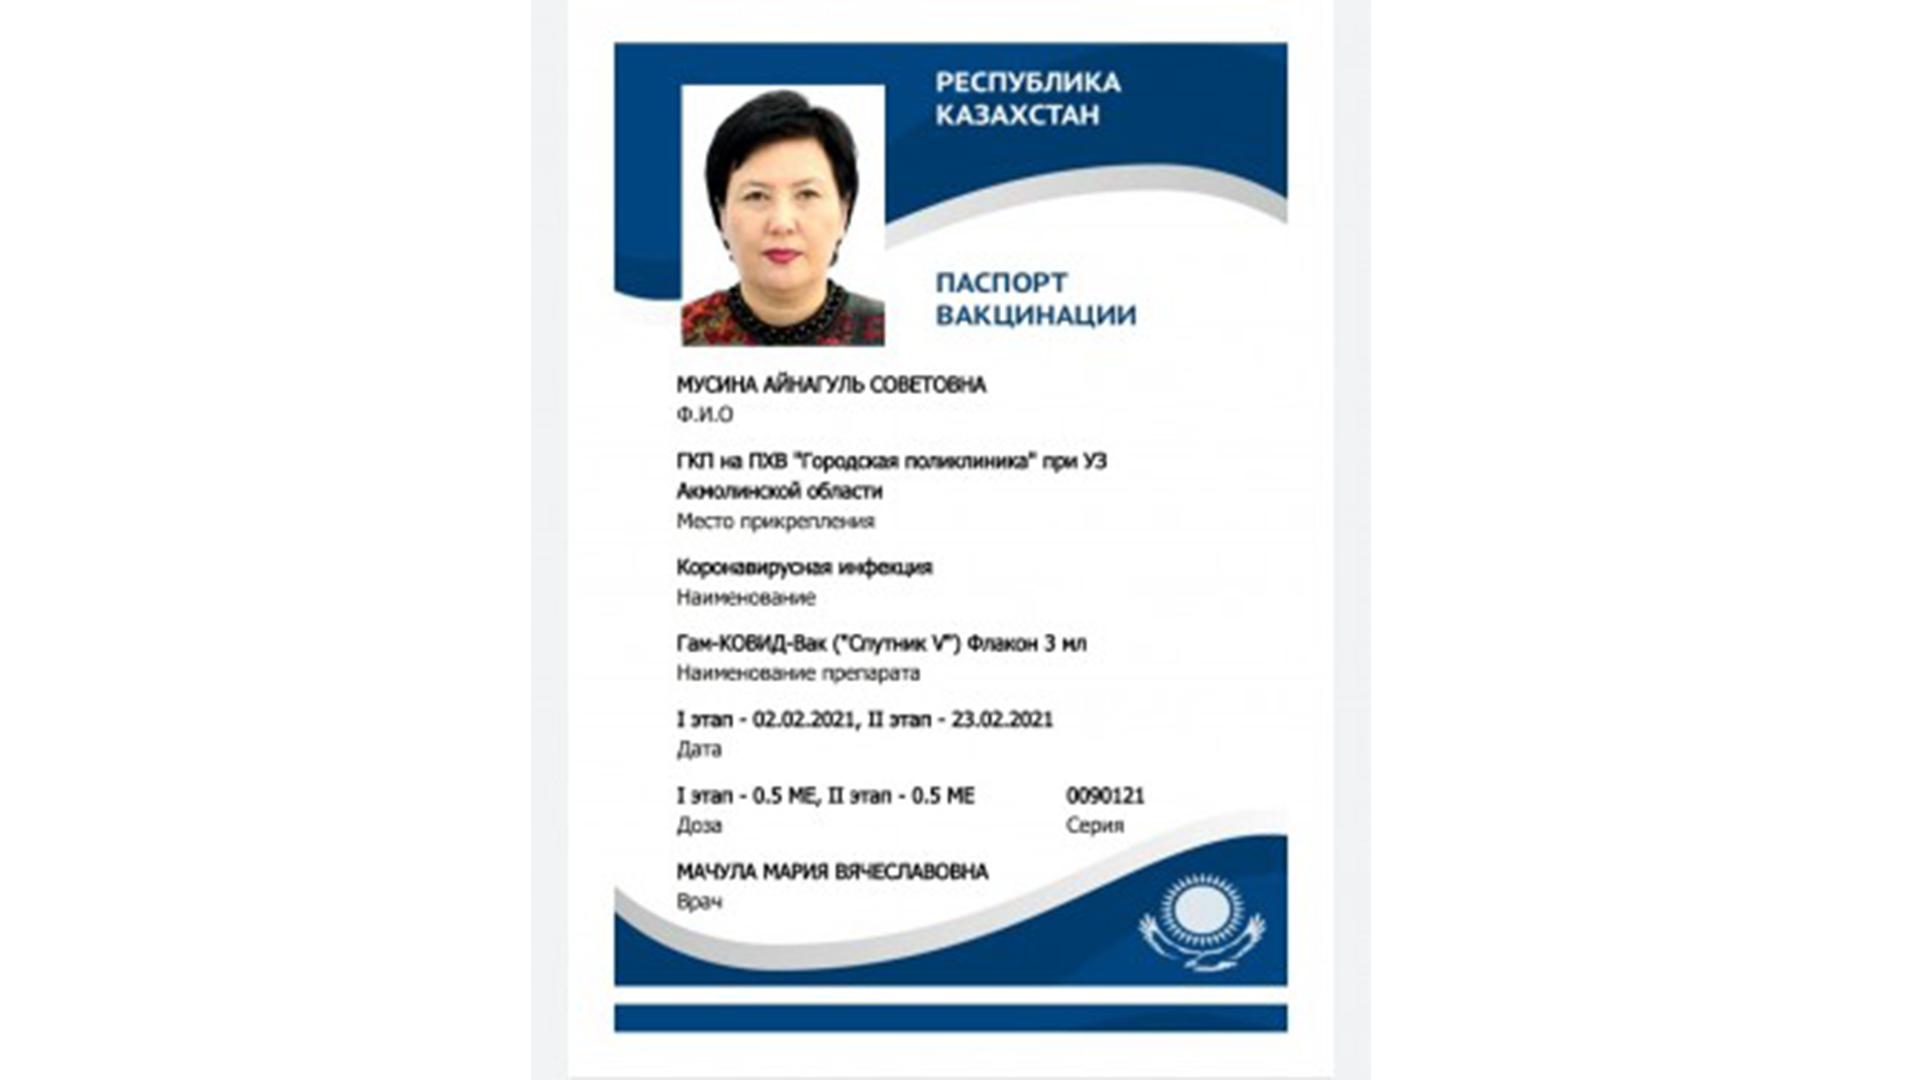 Вакцина документ. Сертификат о вакцинации Казахстан.